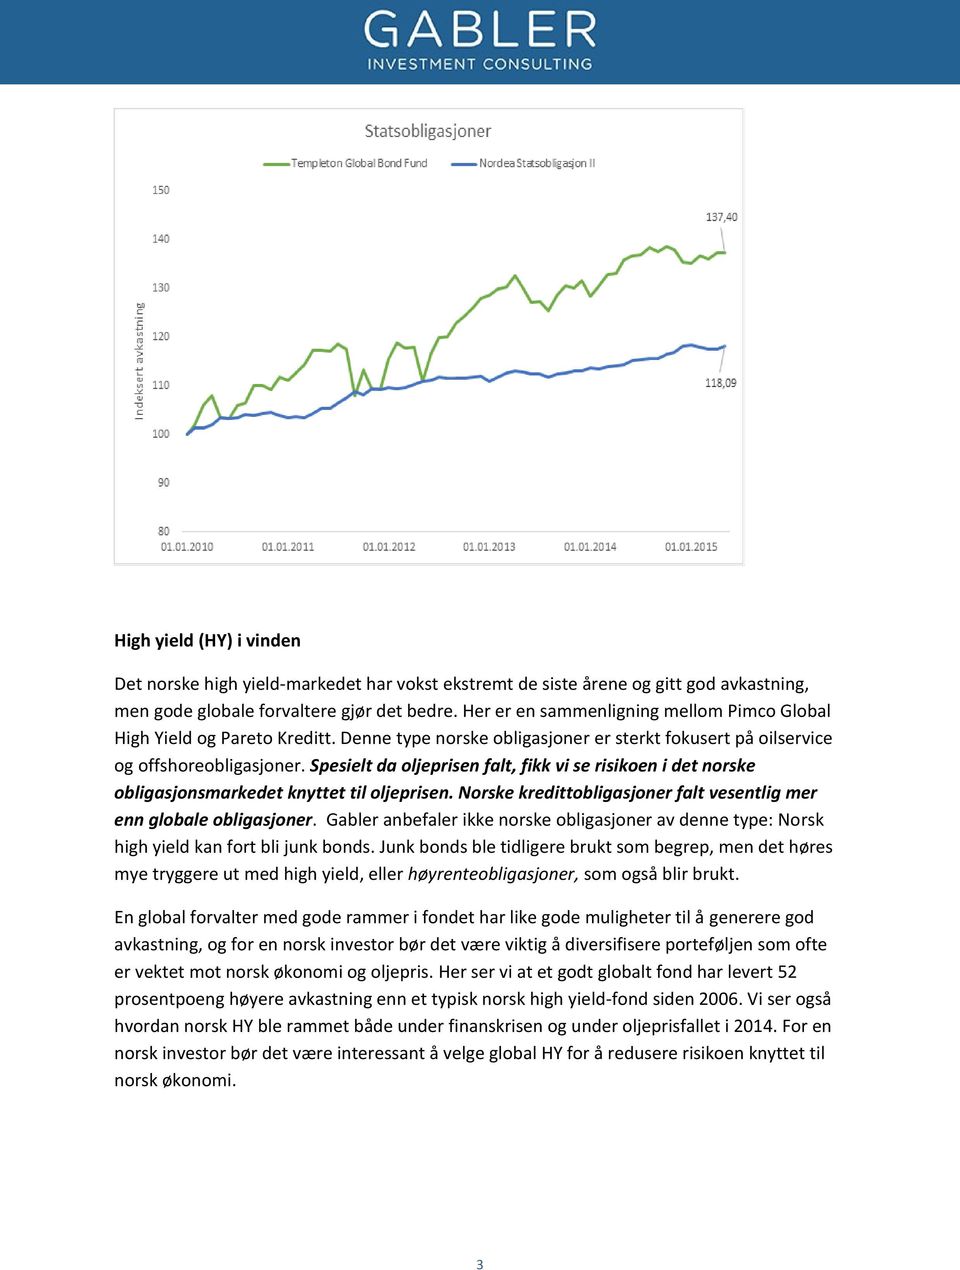 yield (HY) i vinden Det norske high yield-markedet har vokst ekstremt de siste årene og gitt god avkastning, men gode globale forvaltere gjør det bedre.